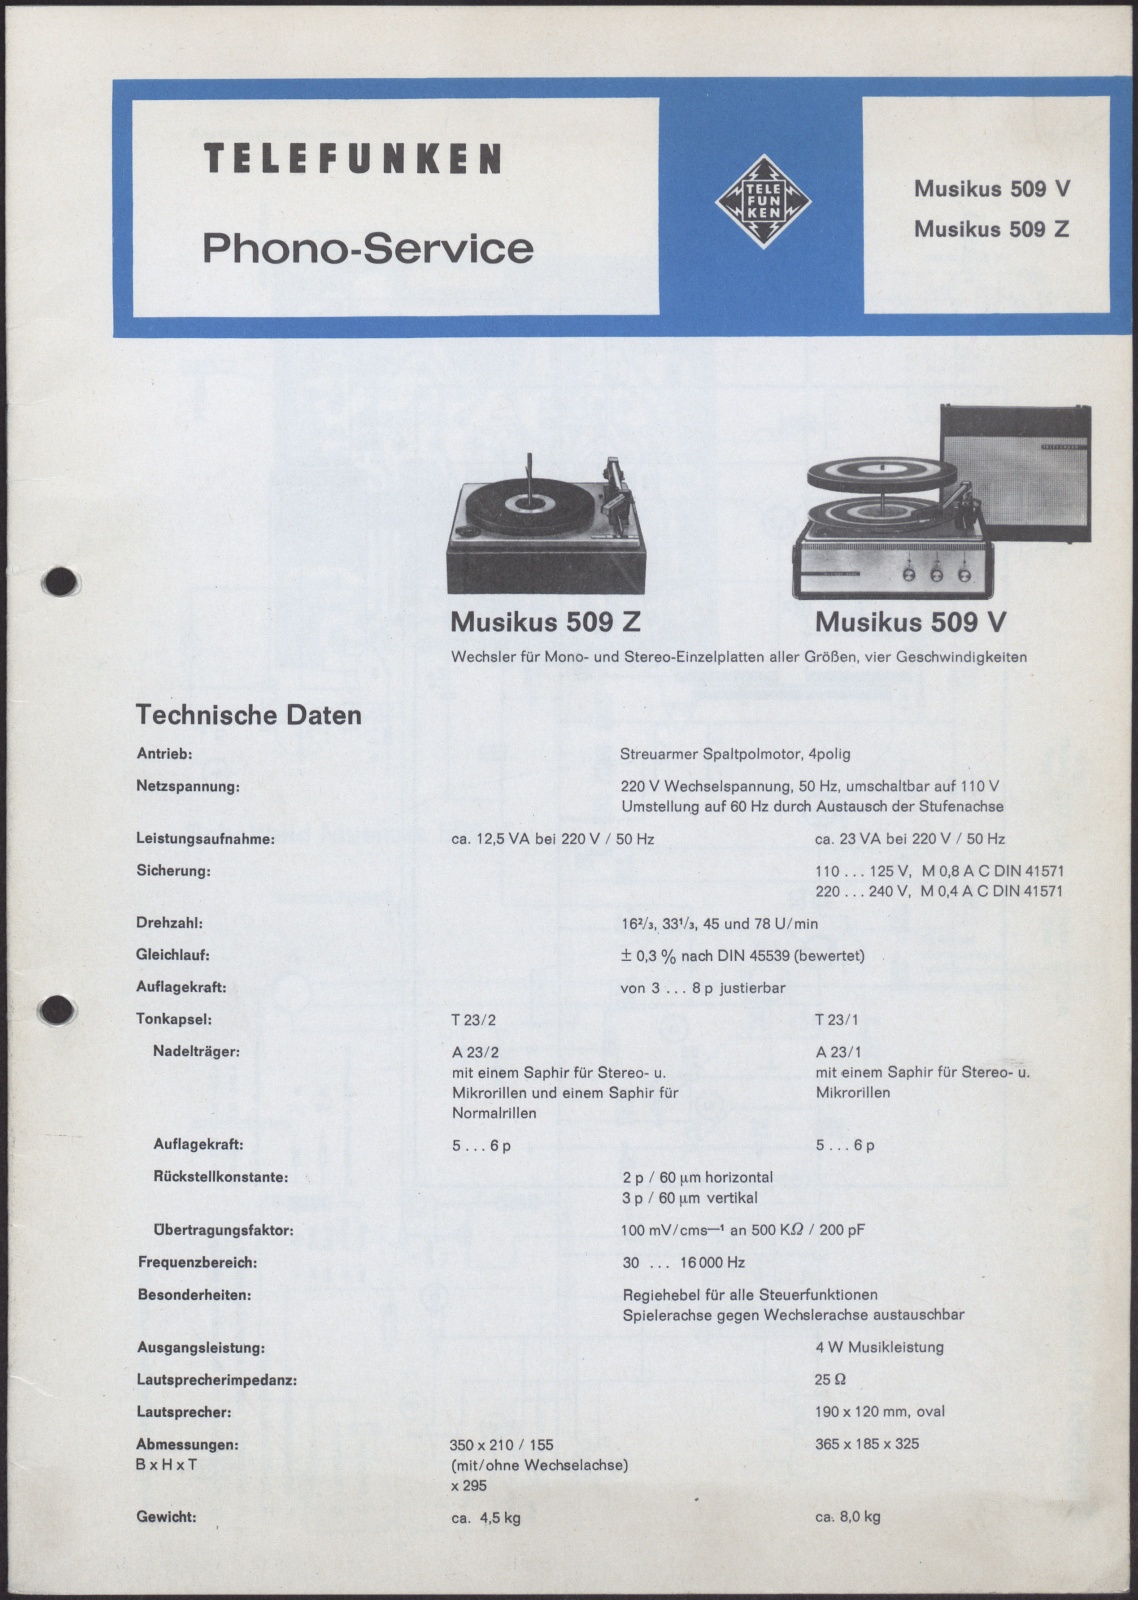 Bedienungsanleitung: Telefunken Phono-Service für Musikus 509 V und Musikus 509 Z (Stiftung Deutsches Technikmuseum Berlin CC0)